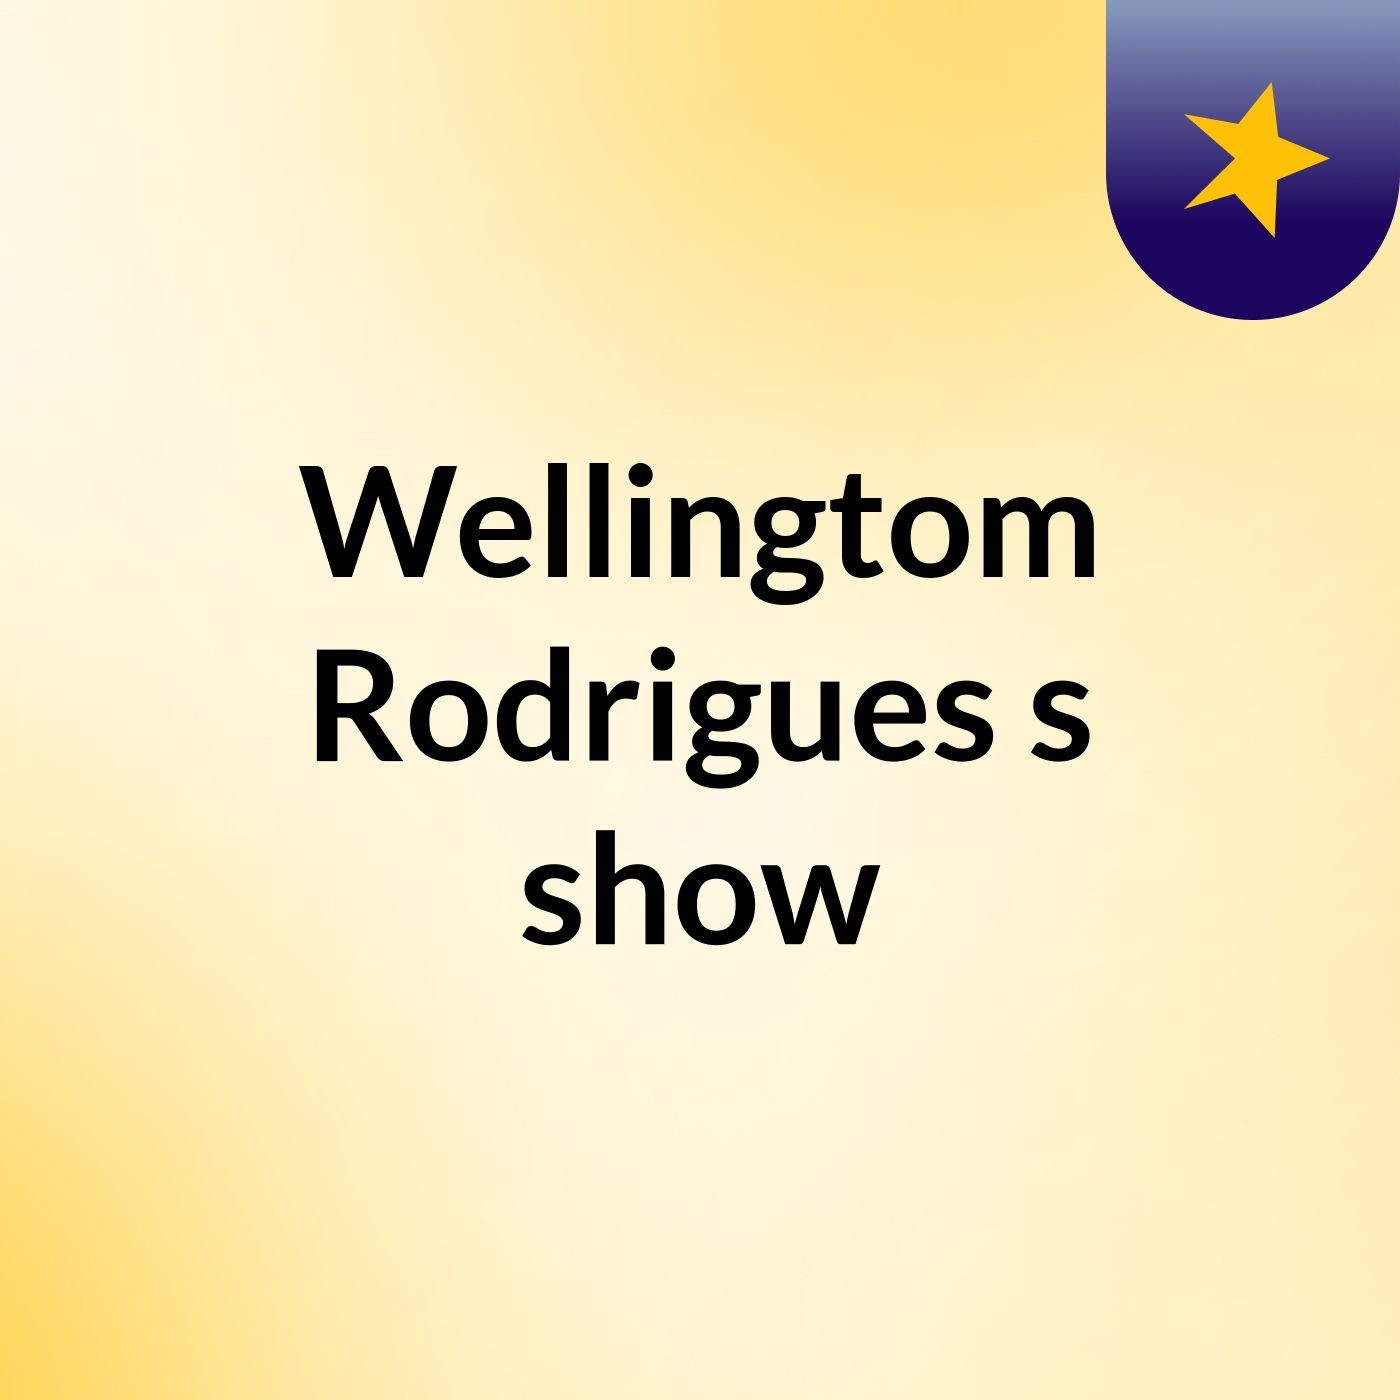 Wellingtom Rodrigues's show